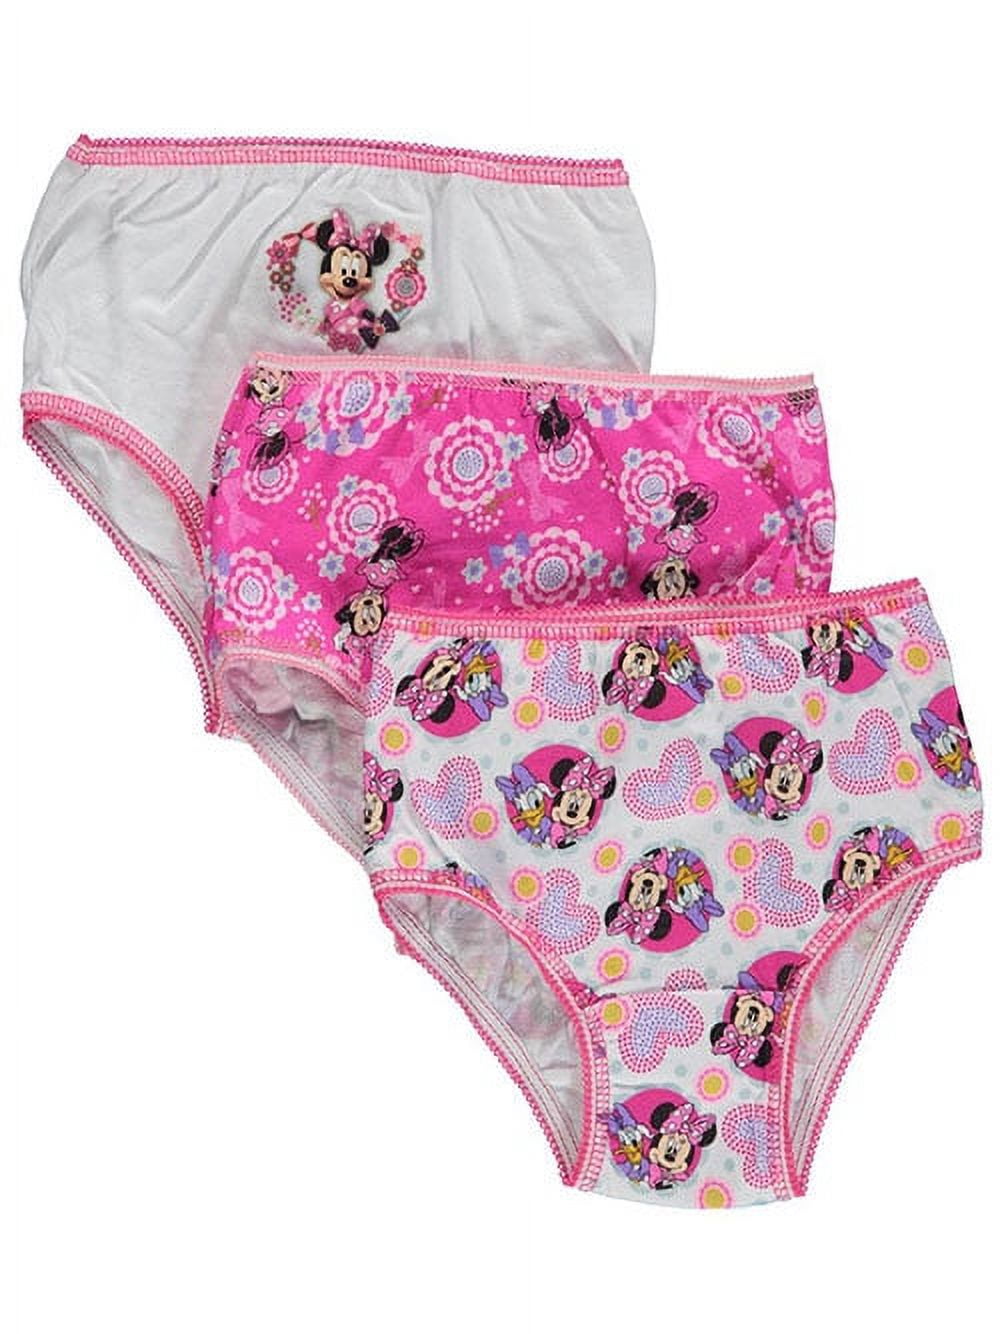 DISNEY MINNIE MOUSE Undies Cotton Underwear 7 Panty Girls Toddler